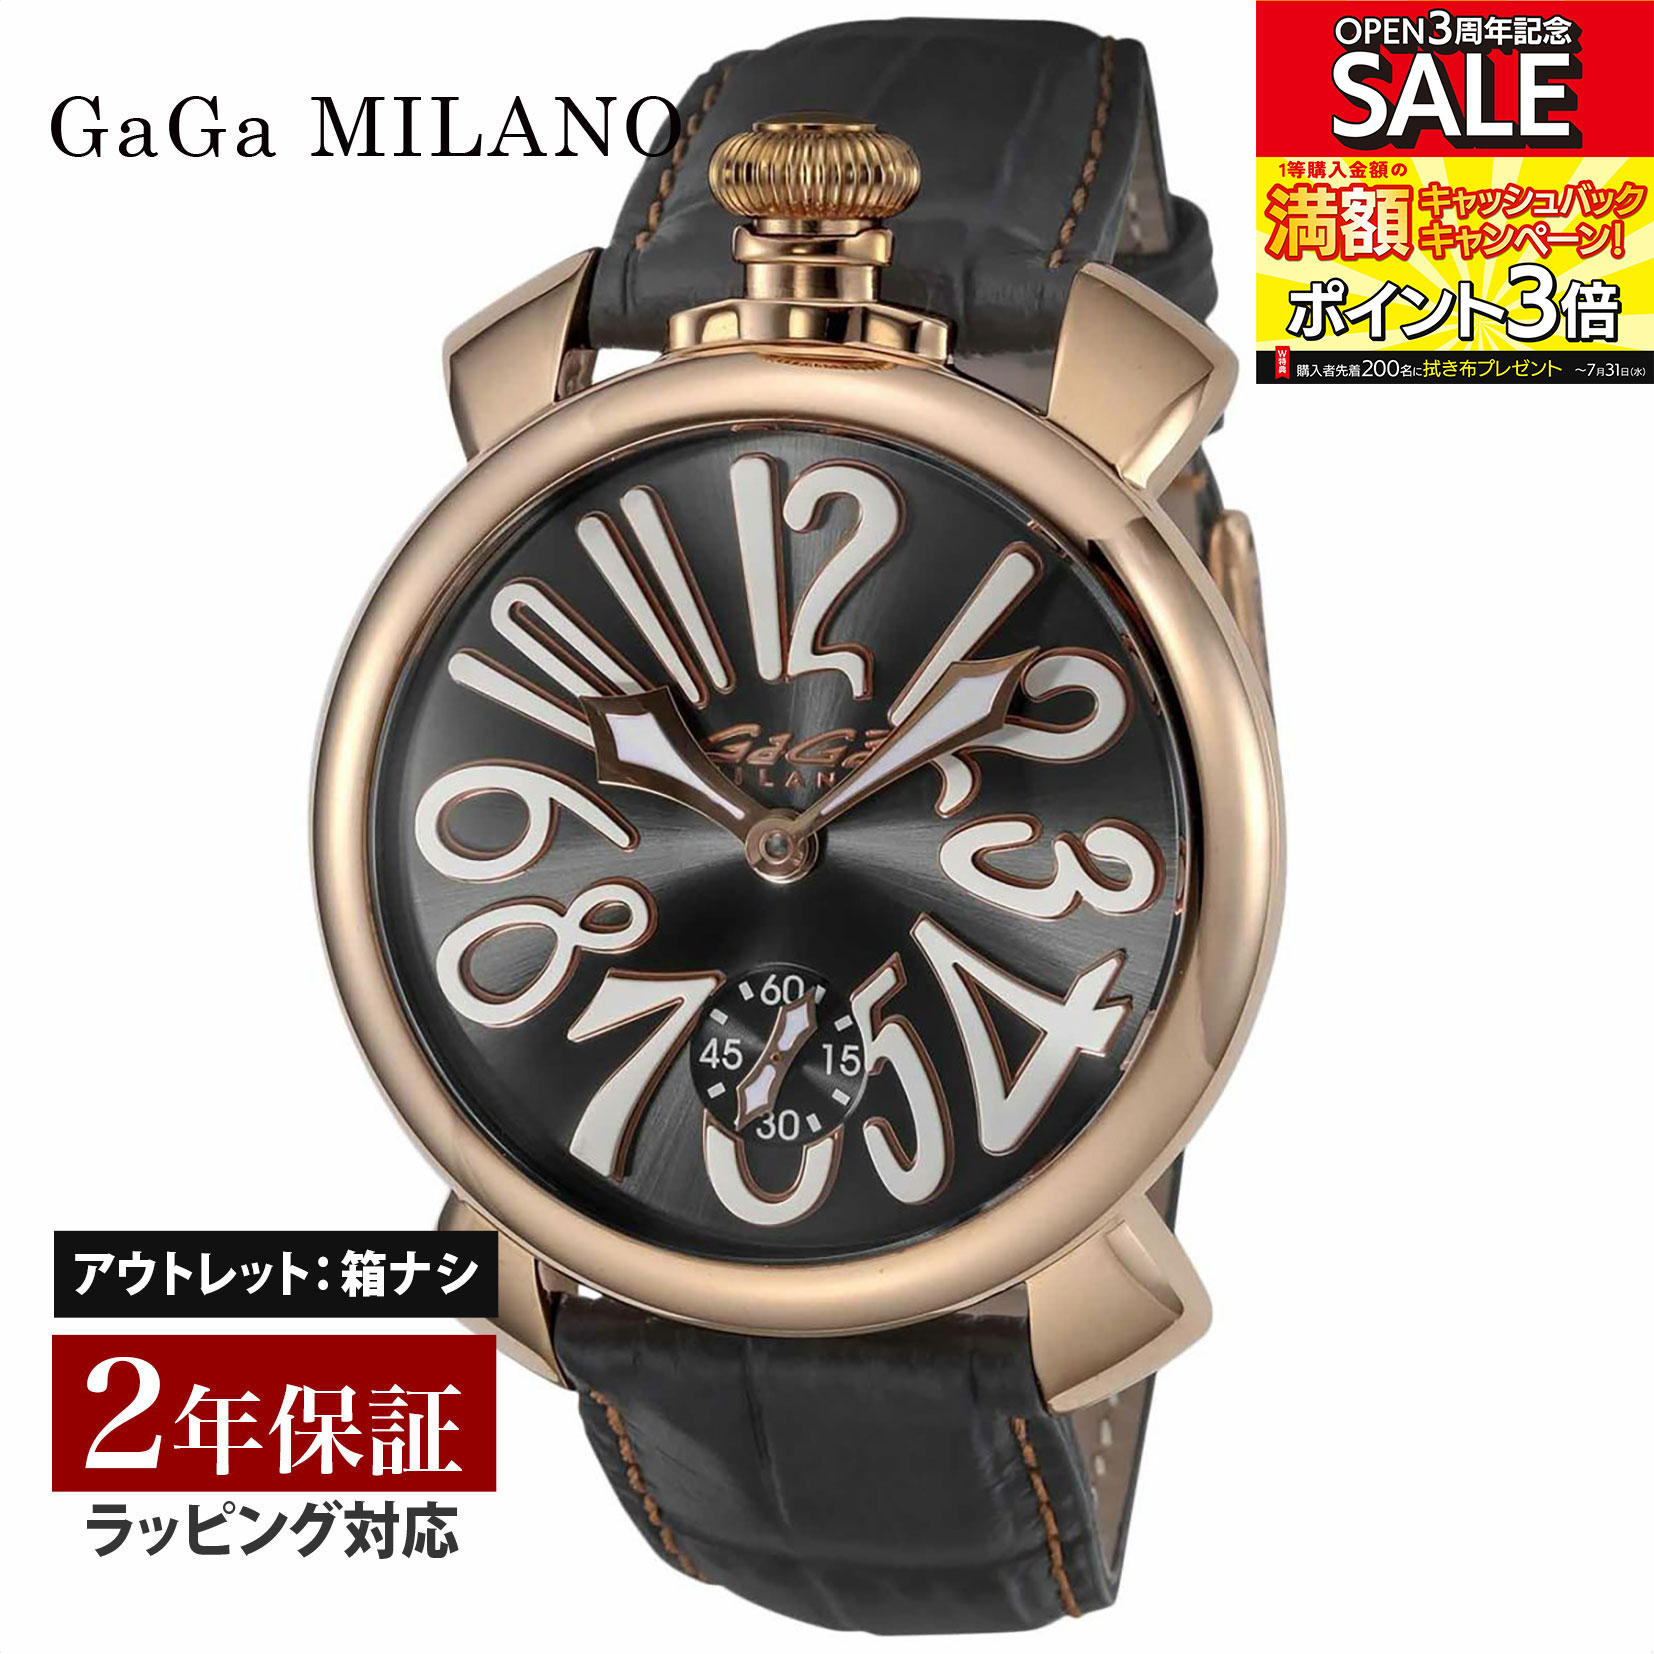 楽天市場】【OUTLET】 ガガミラノ GaGaMILANO メンズ 時計 MANUALE 